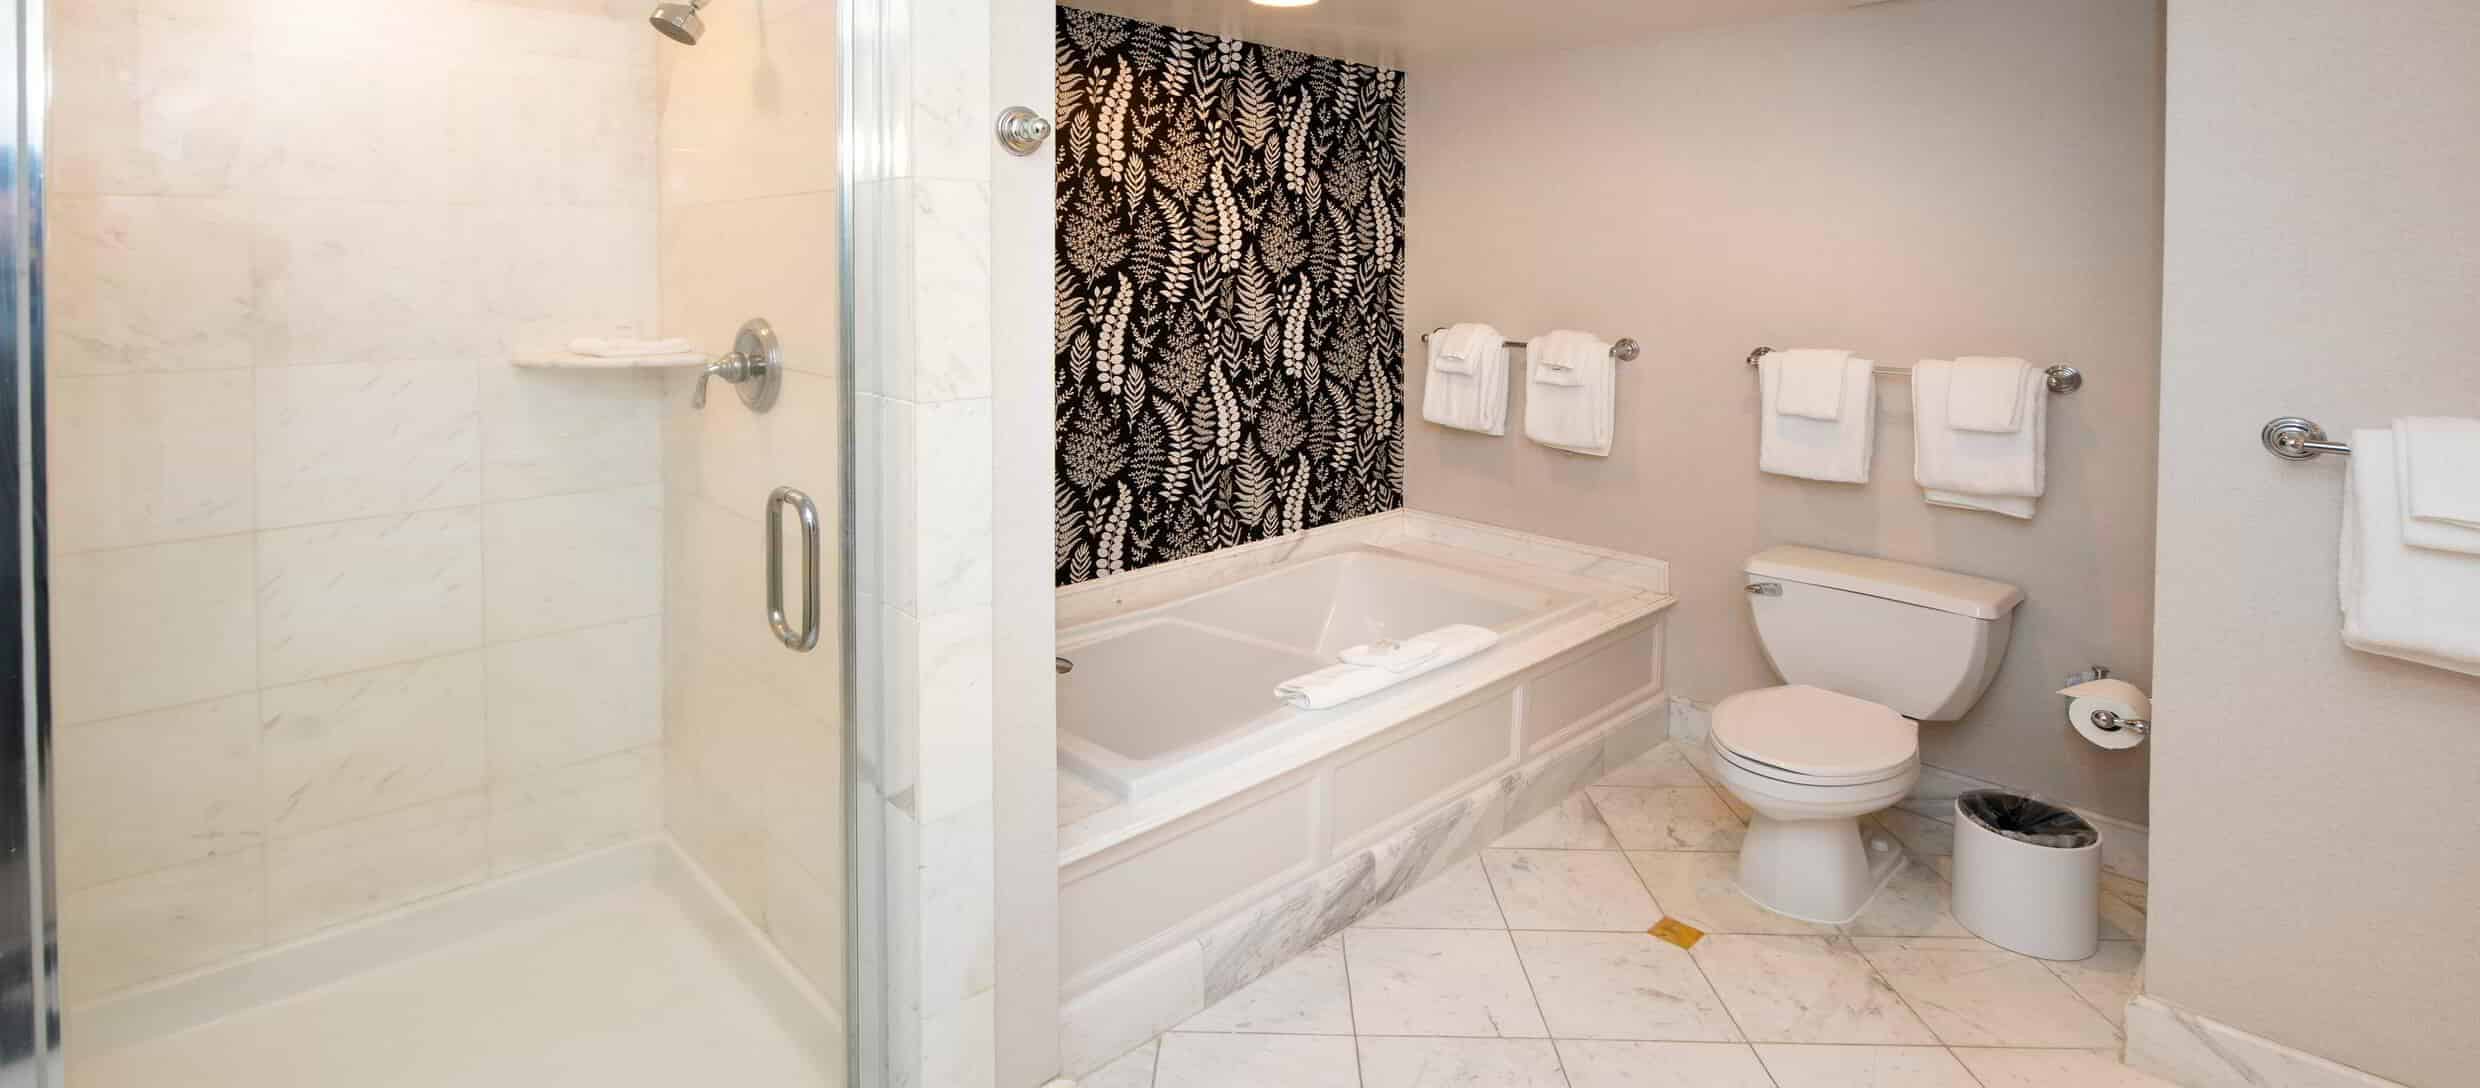 beau-rivage-hotel-junior-suite-bathroom-walk-in-shower.jpg.image.2480.1088.high